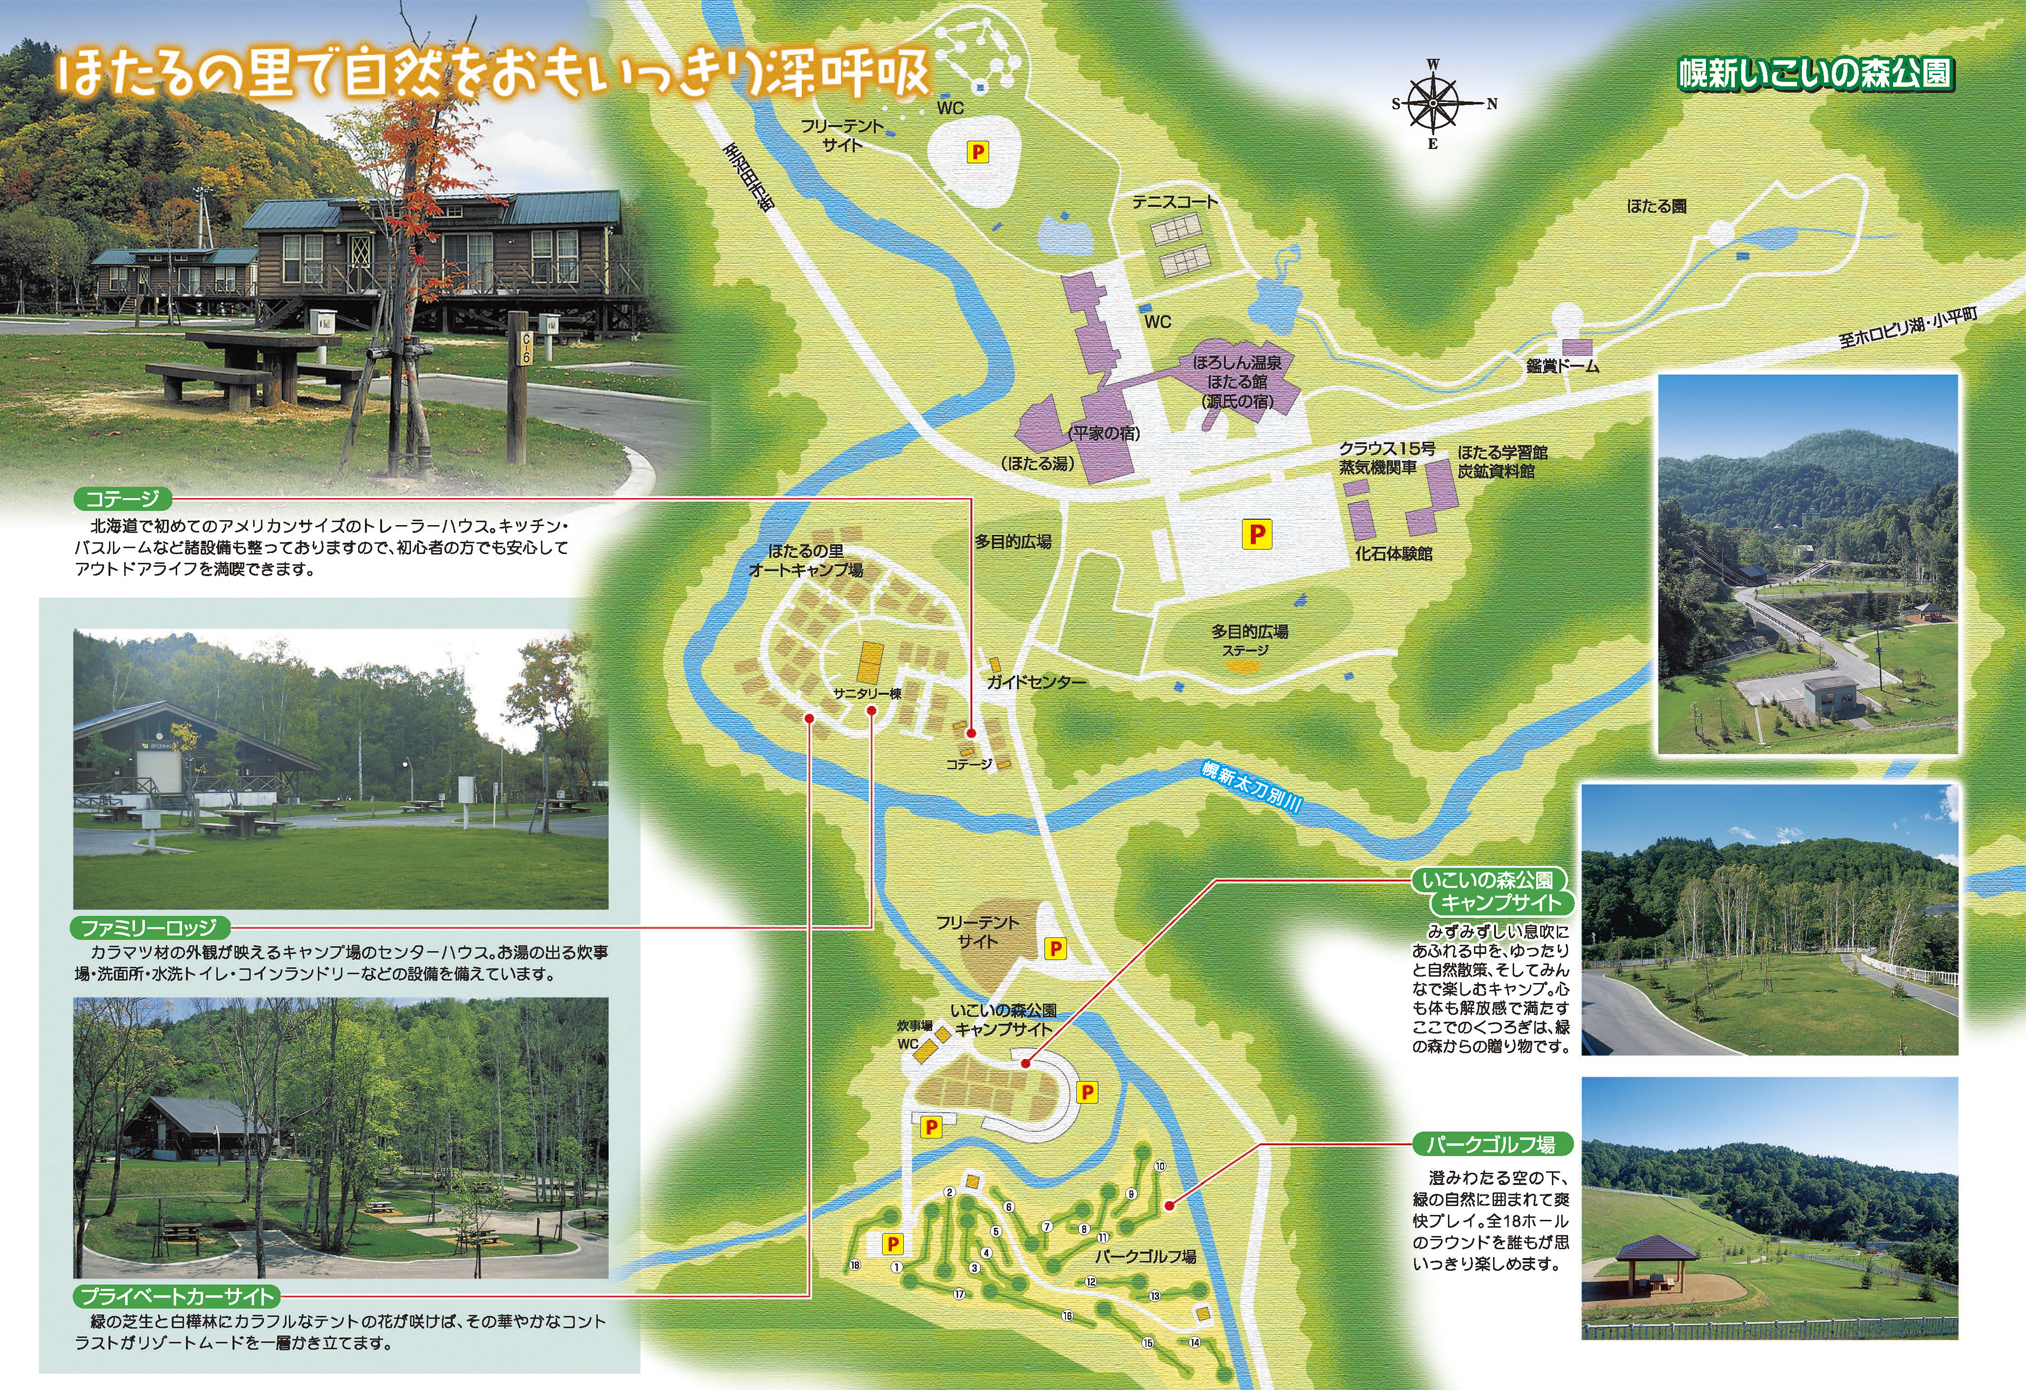 いこいの森公園・ほたるの里オートキャンプ場の地図